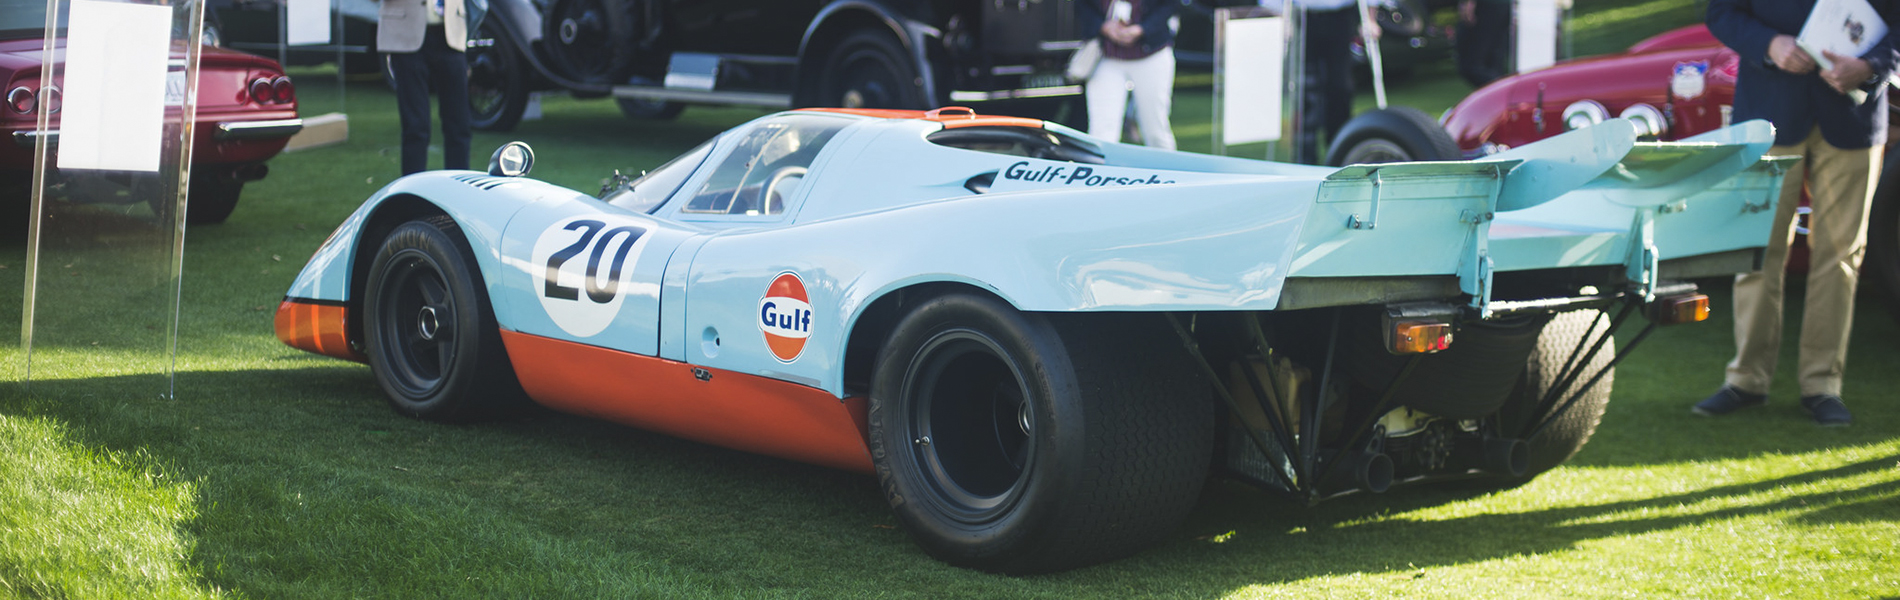 Porsche 917 - Gulf